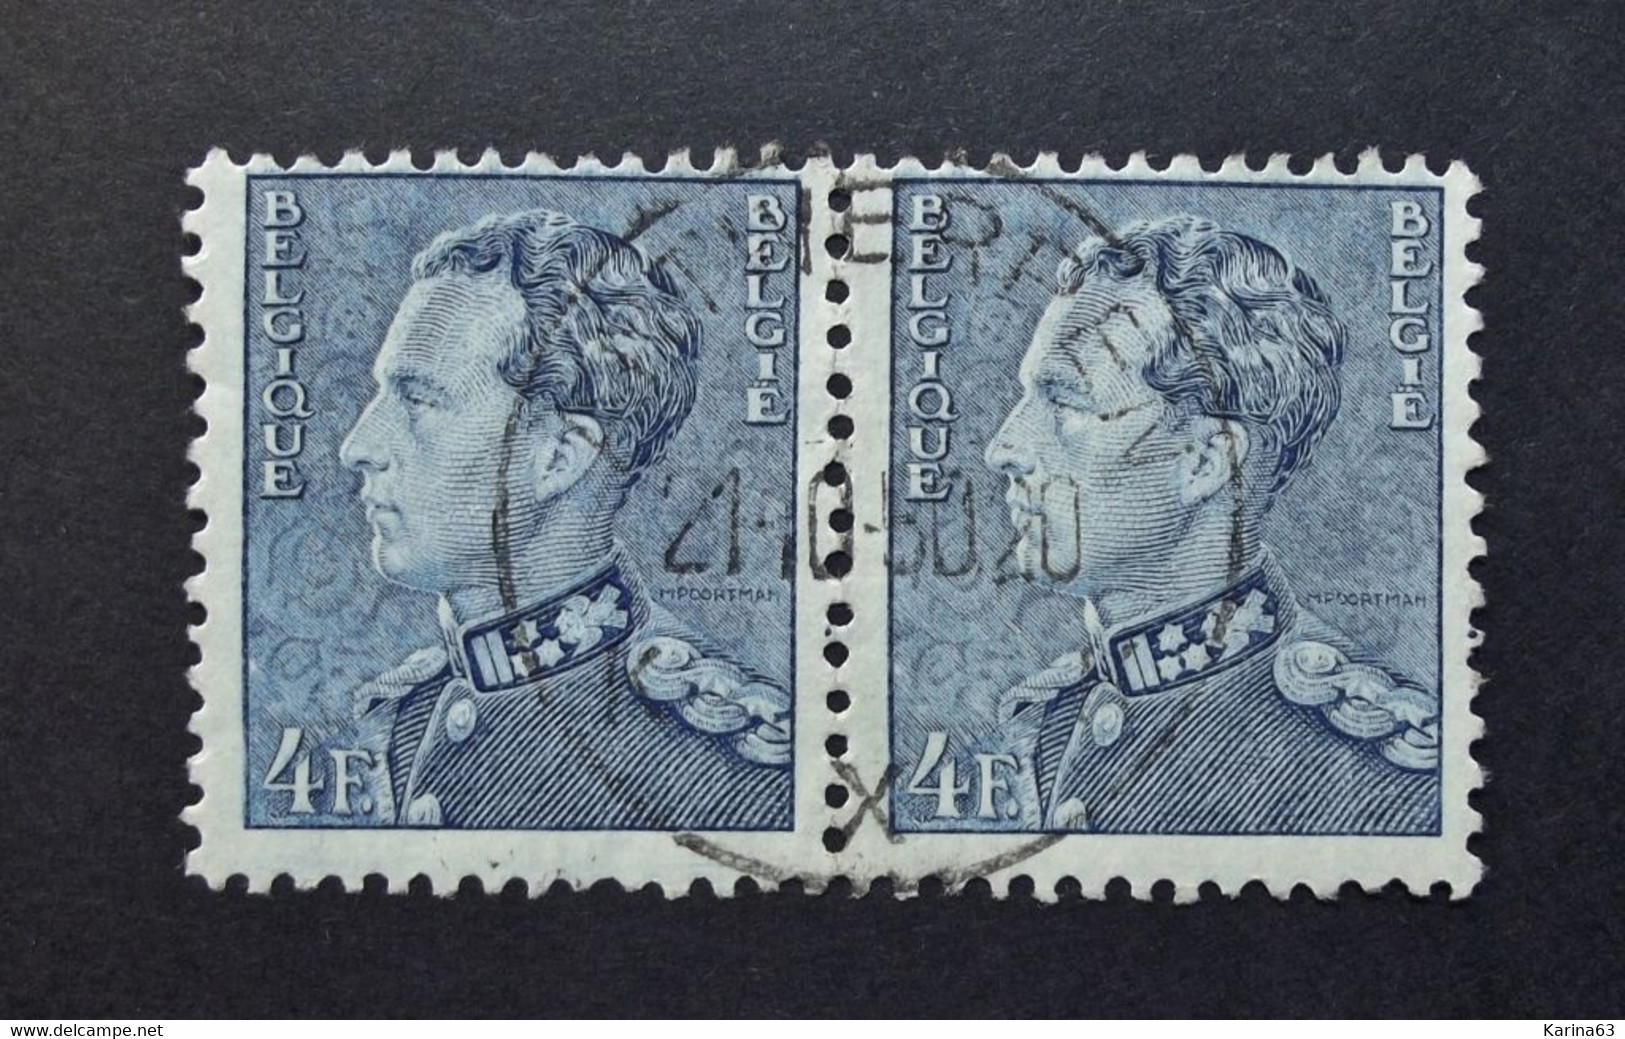 Belgie Belgique - 1950 - OPB/COB  N° 833  (2 Value) - Koning Leopold III  Poortman Obl. -  Antwerpen X . - Gebraucht